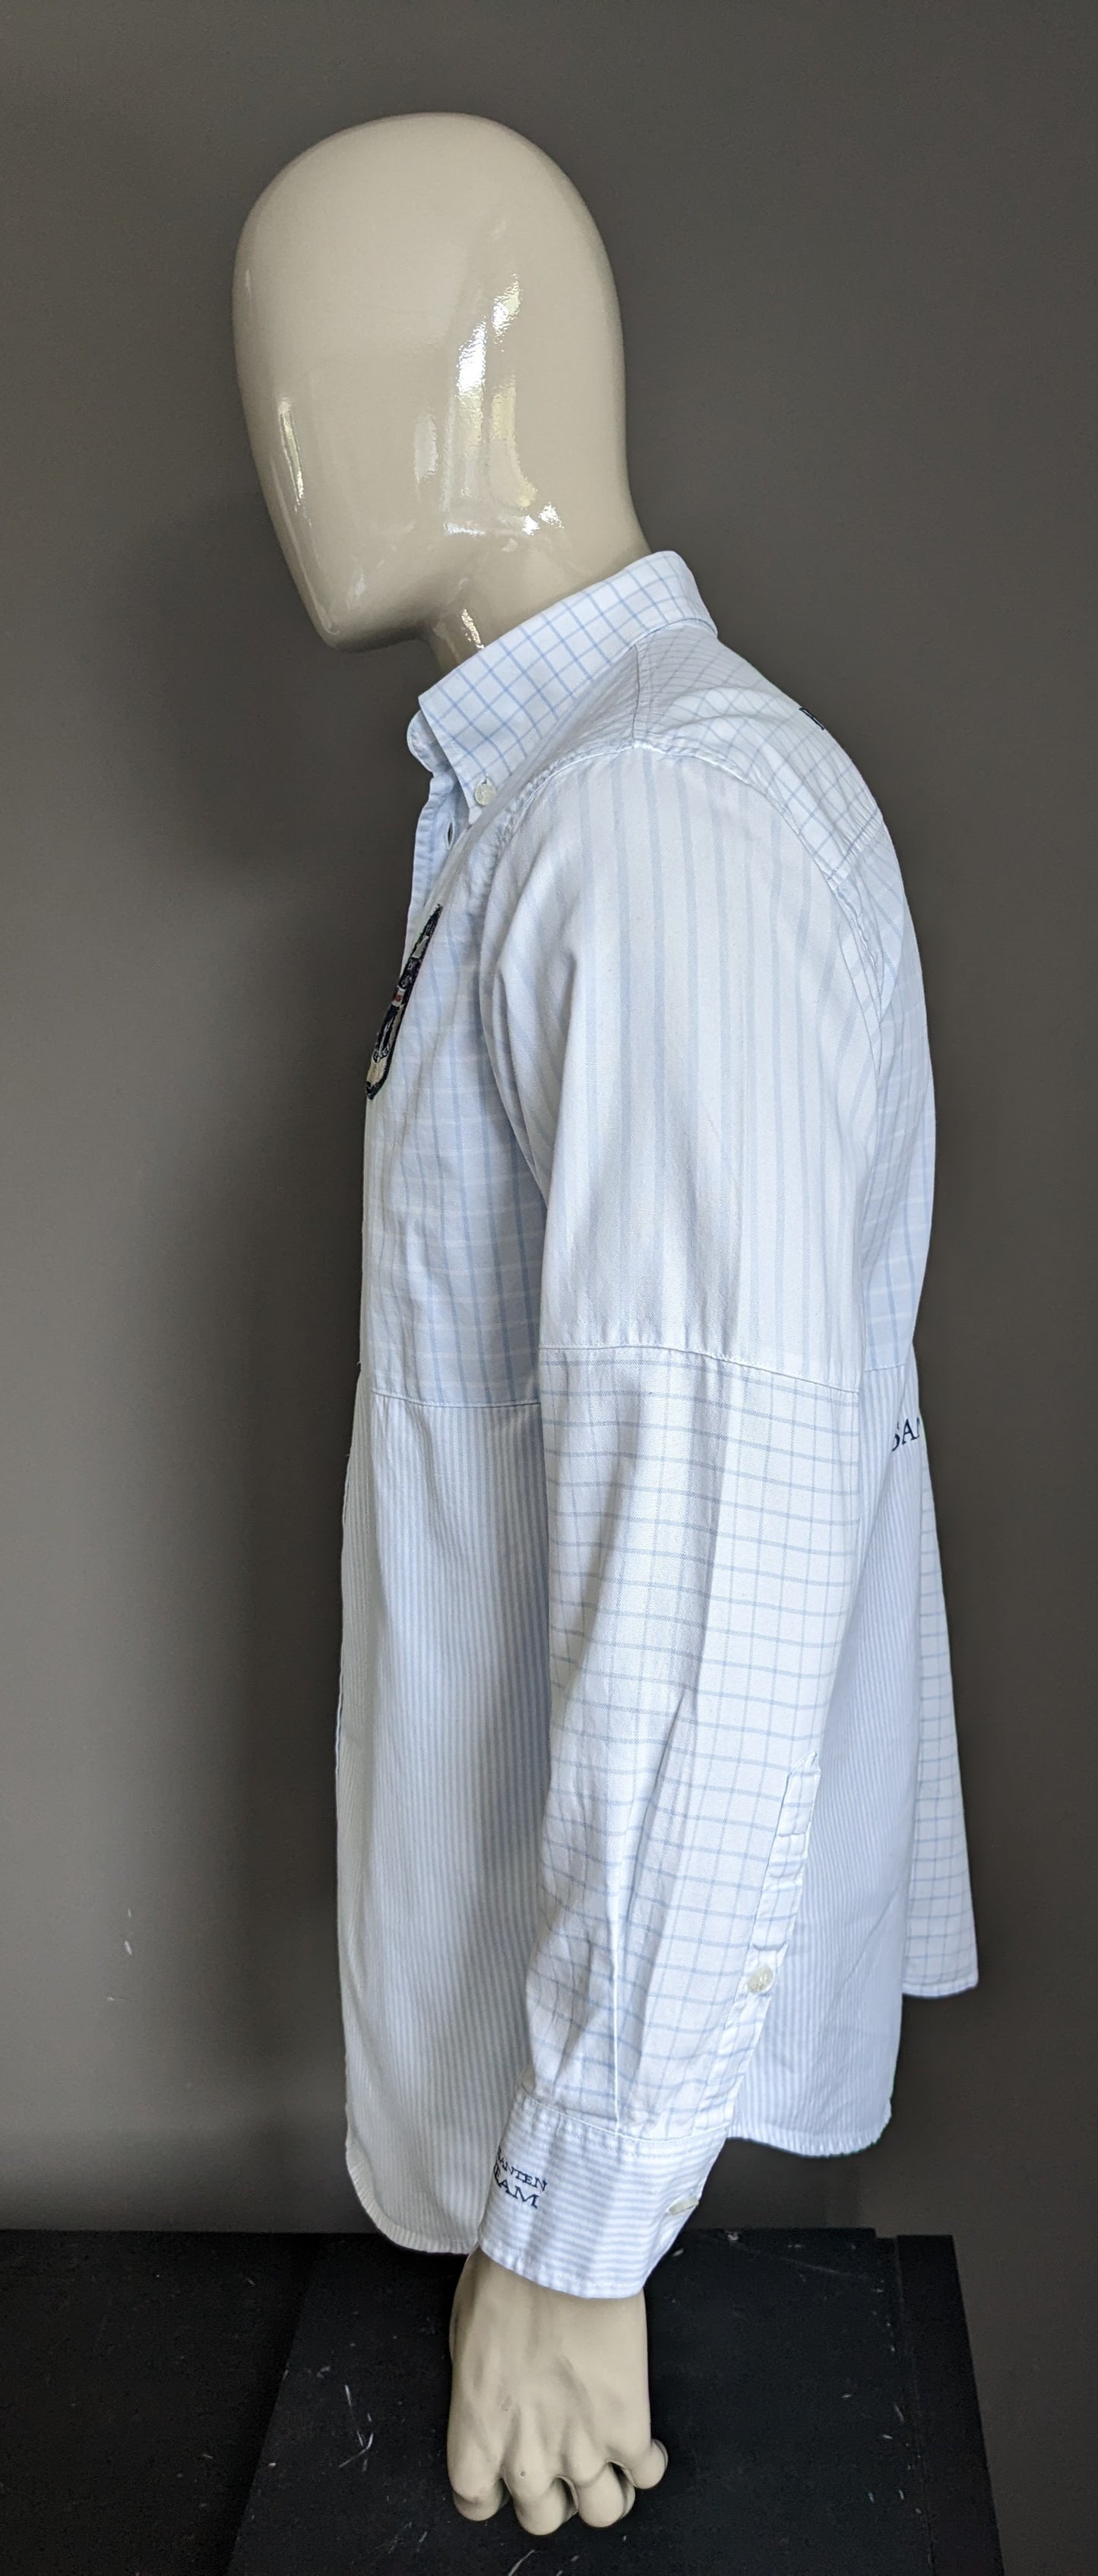 Van Santen & Van Santen overhemd. Blauw Wit gekleurd met applicaties. Maat L.